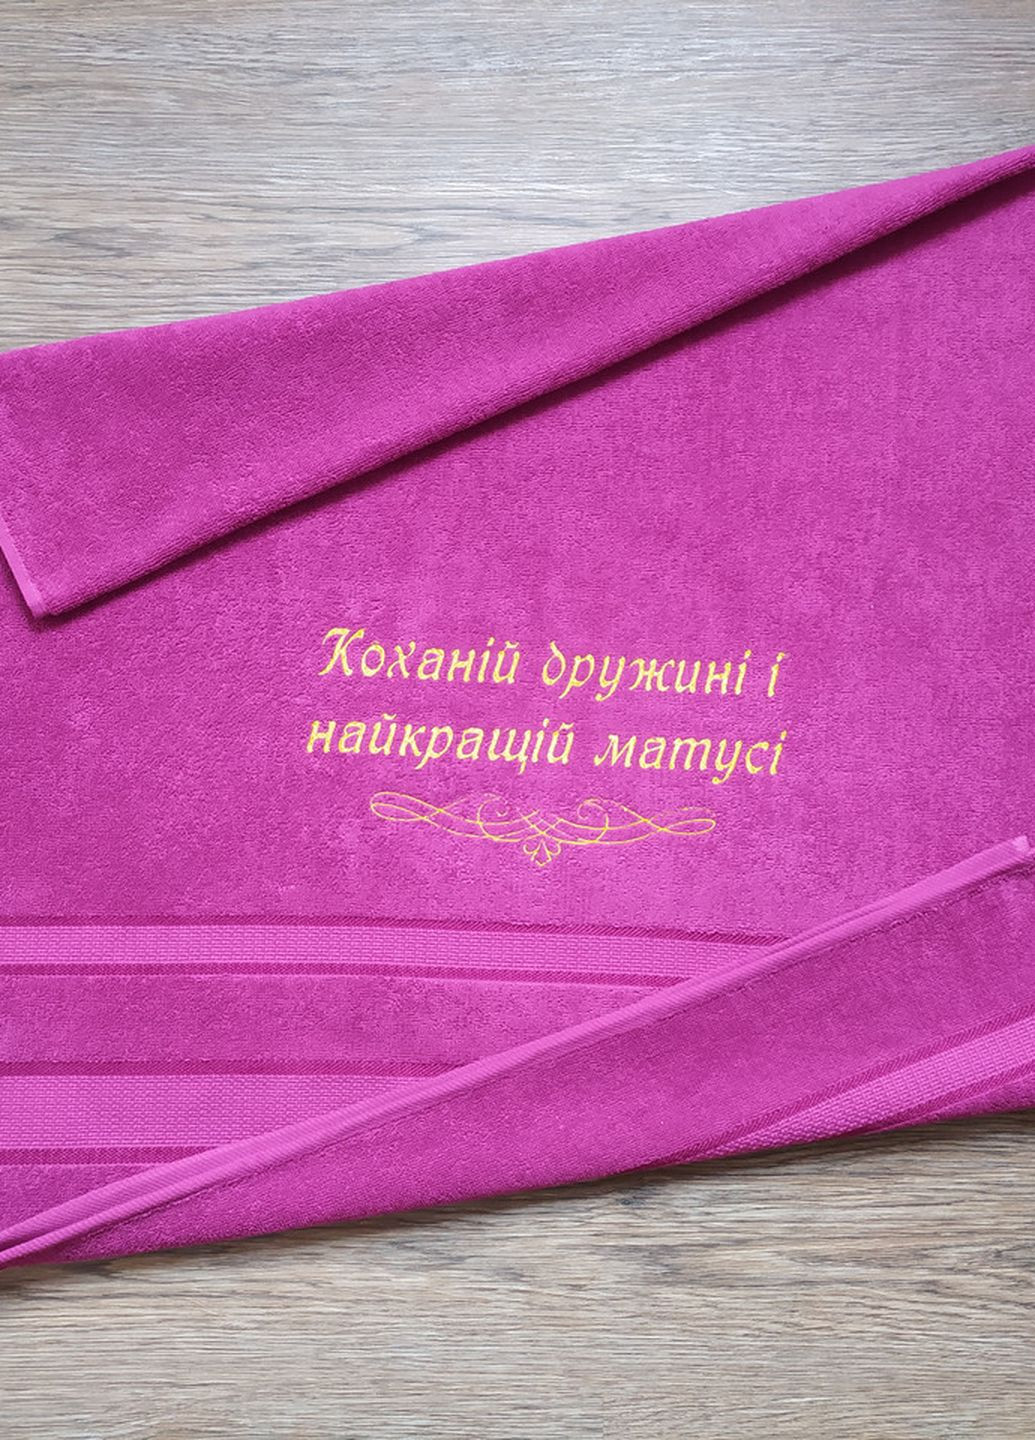 No Brand полотенце с вышивкой махровое банное 70*140 фуксия жене маме 00263 однотонный фуксия производство - Украина